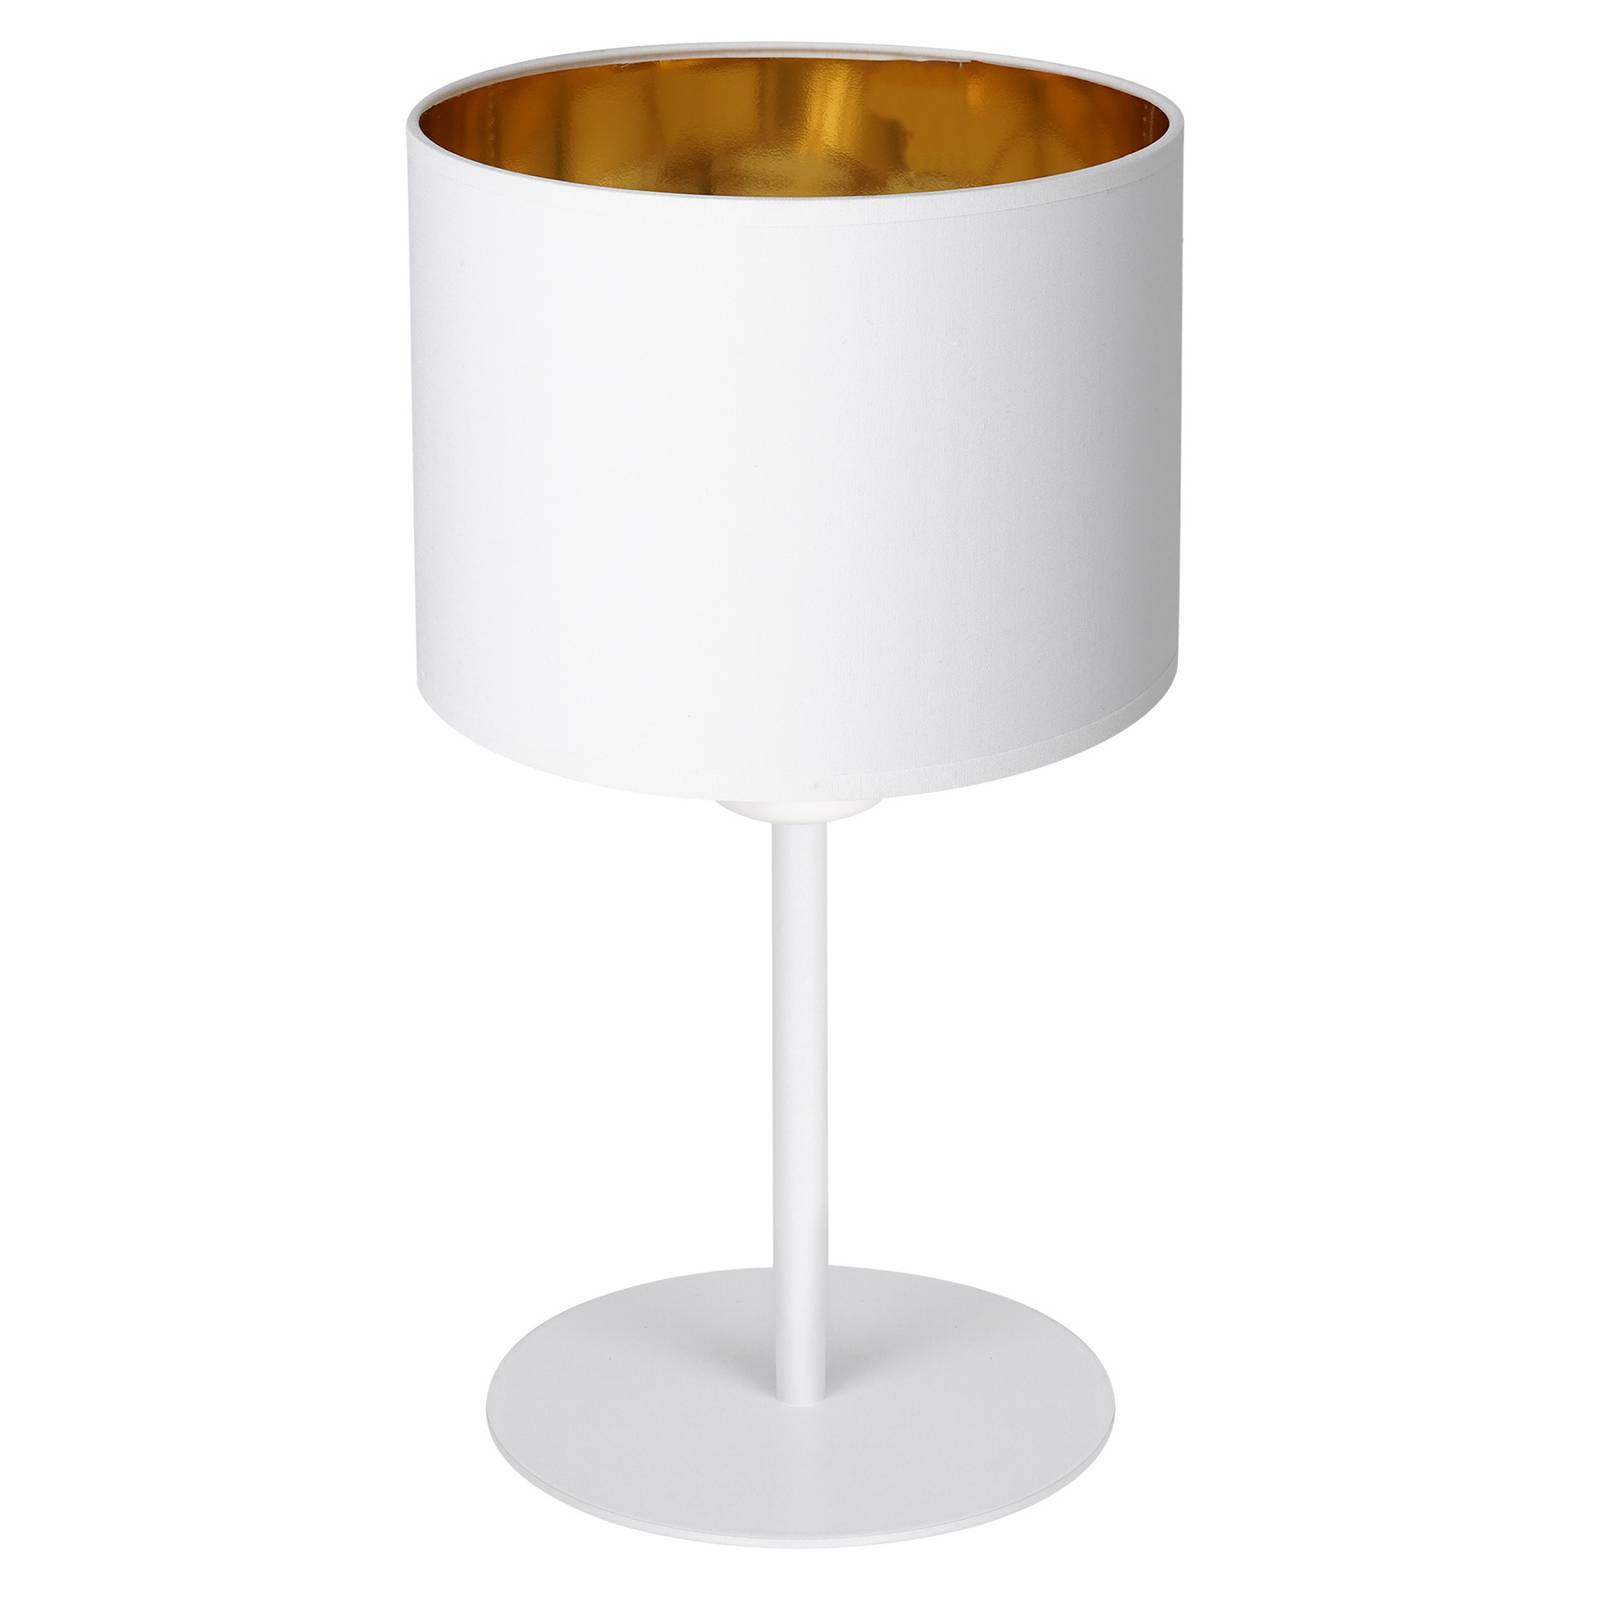 Soho bordlampe cylinderformet højde 34cm hvid/guld